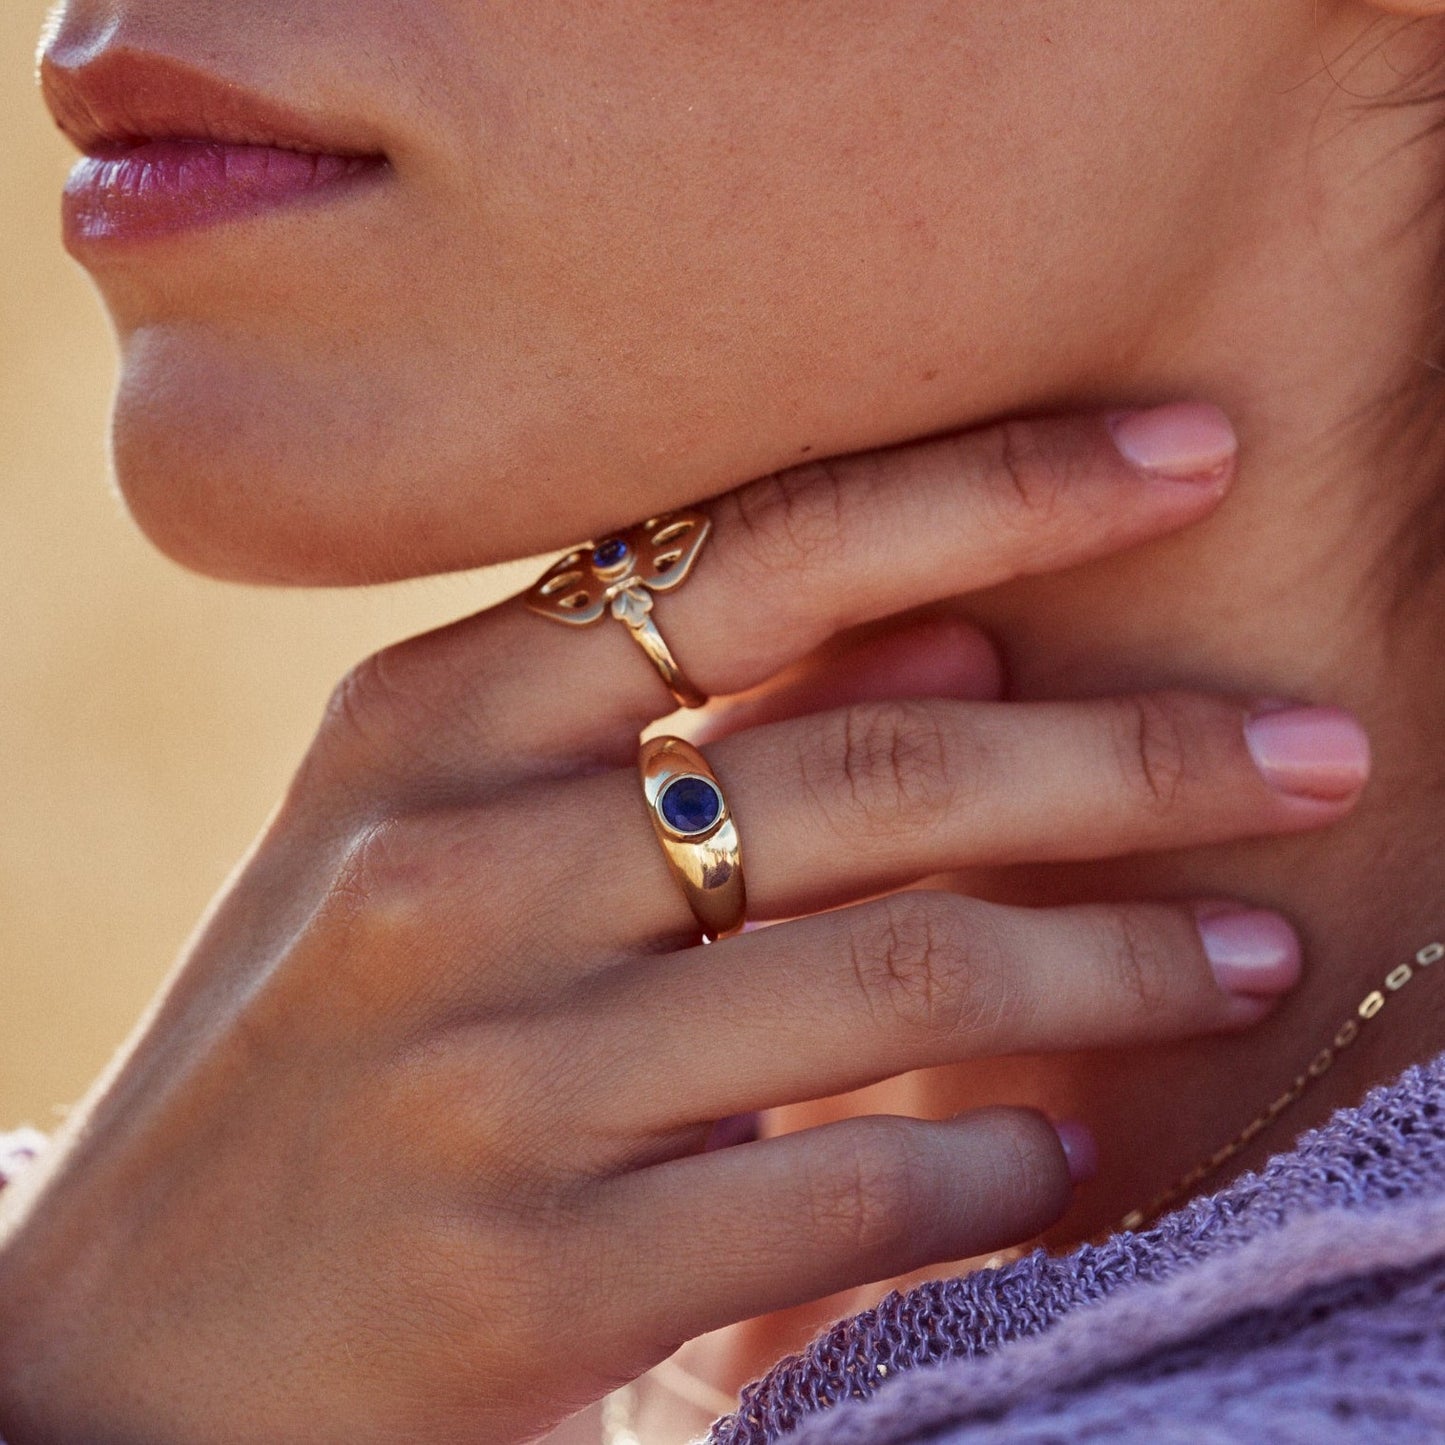 Mano de una mujer mostrando el anillo Simone, fabricado con oro de 18k y un zafiro azul natural en talla redonda.